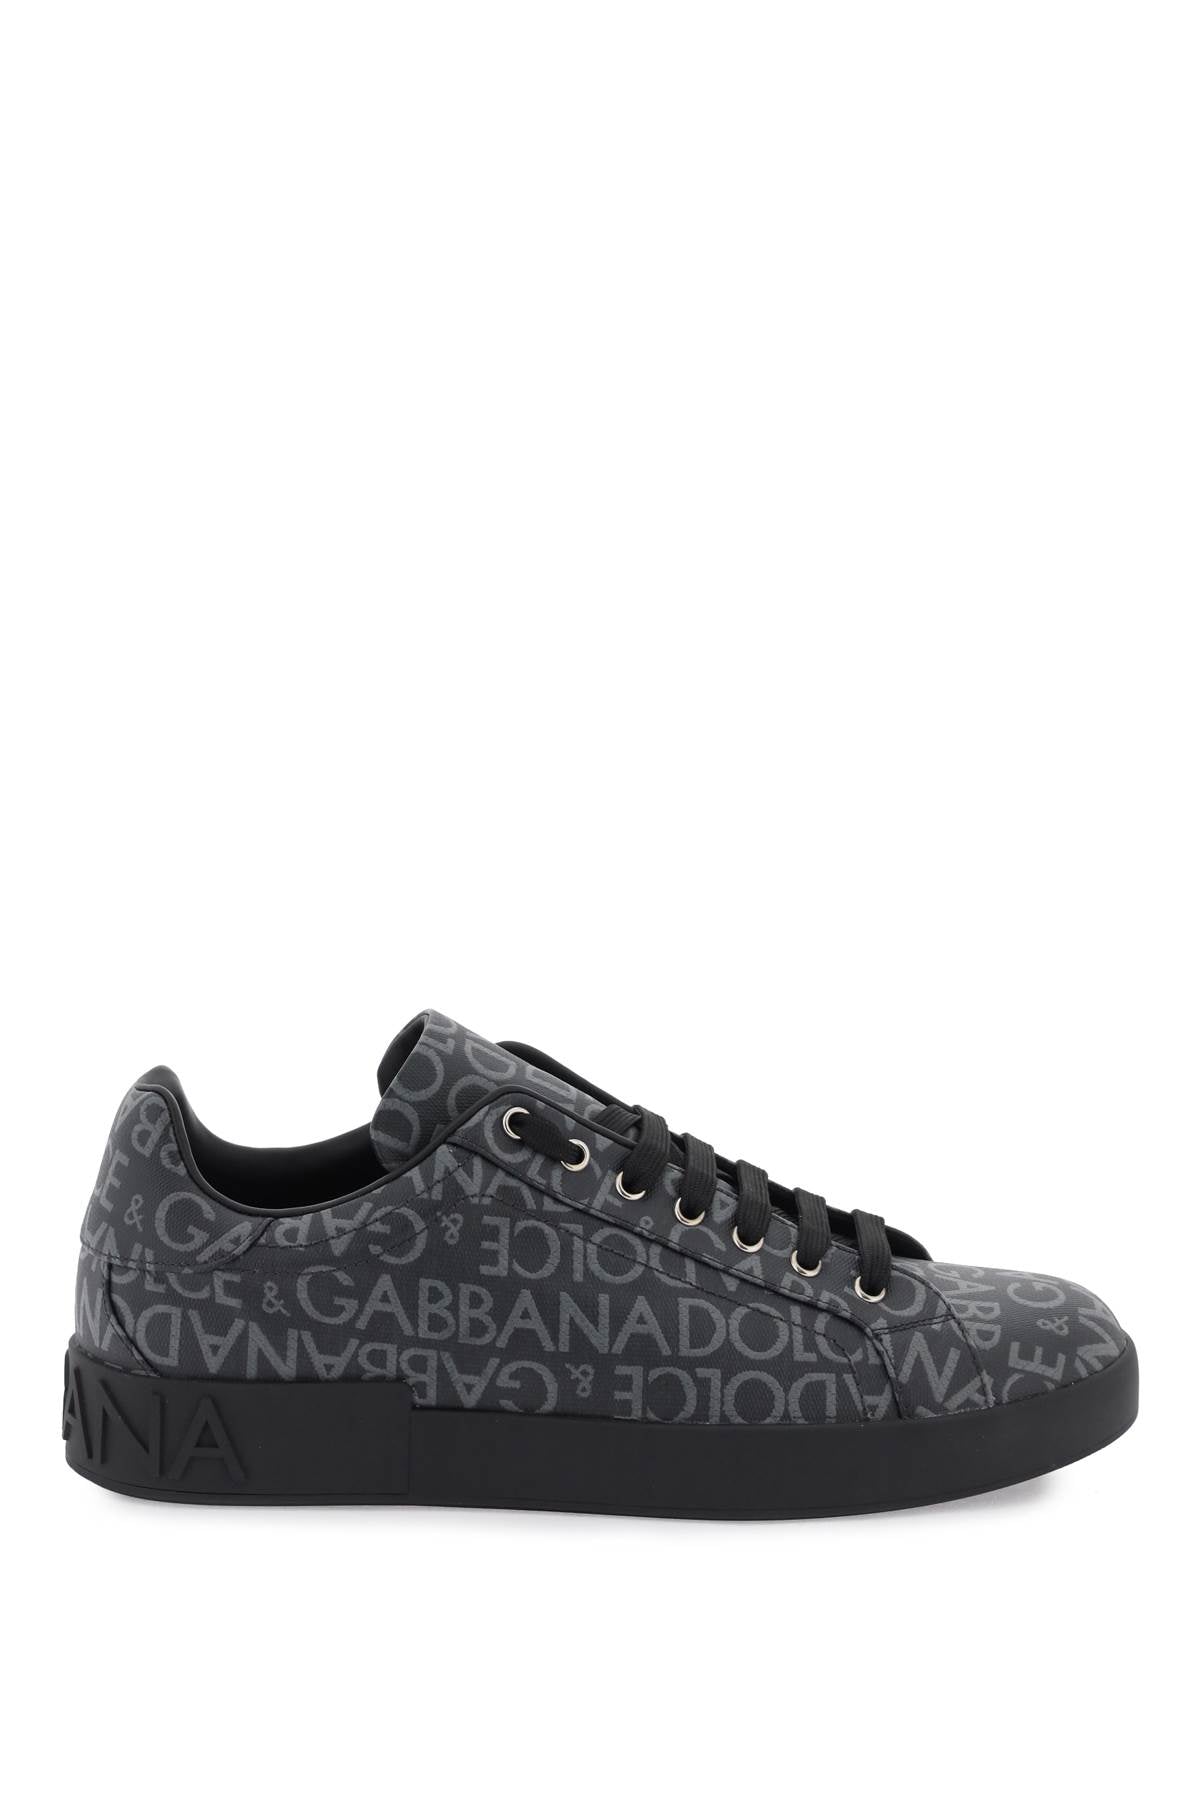 Shop Dolce & Gabbana Portofino Jacquard Sneakers In Black, Grey